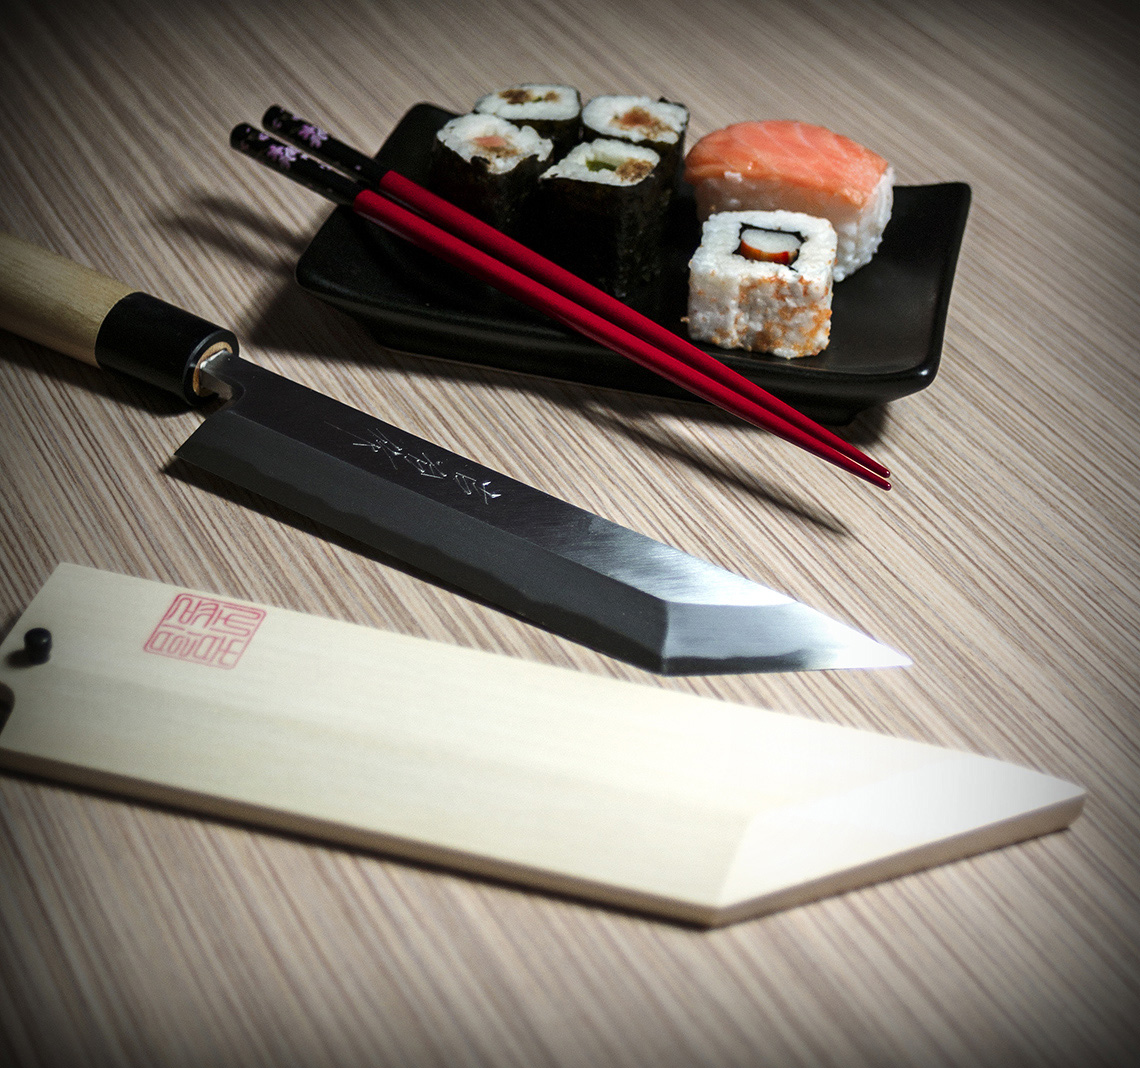 Noże japońskie marki Kichiji kute są według reguł tradycyjnego kowalstwa